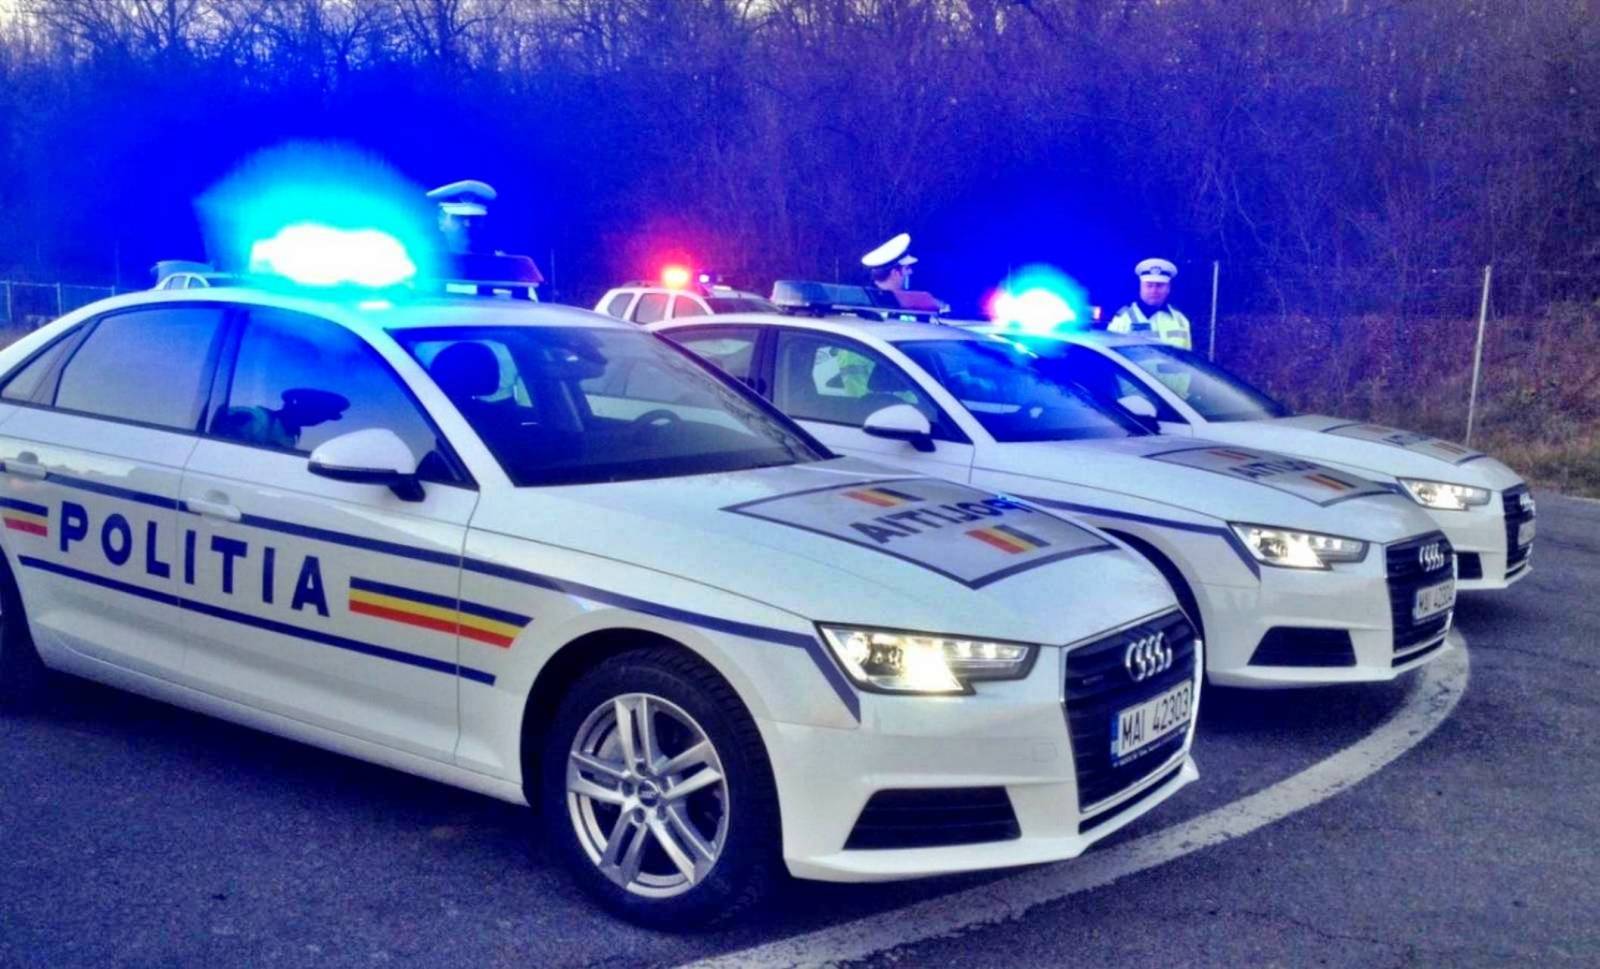 Die rumänische Polizei führt weiterhin Razzien im Straßenverkehr durch und stellt Drogenkonsum fest